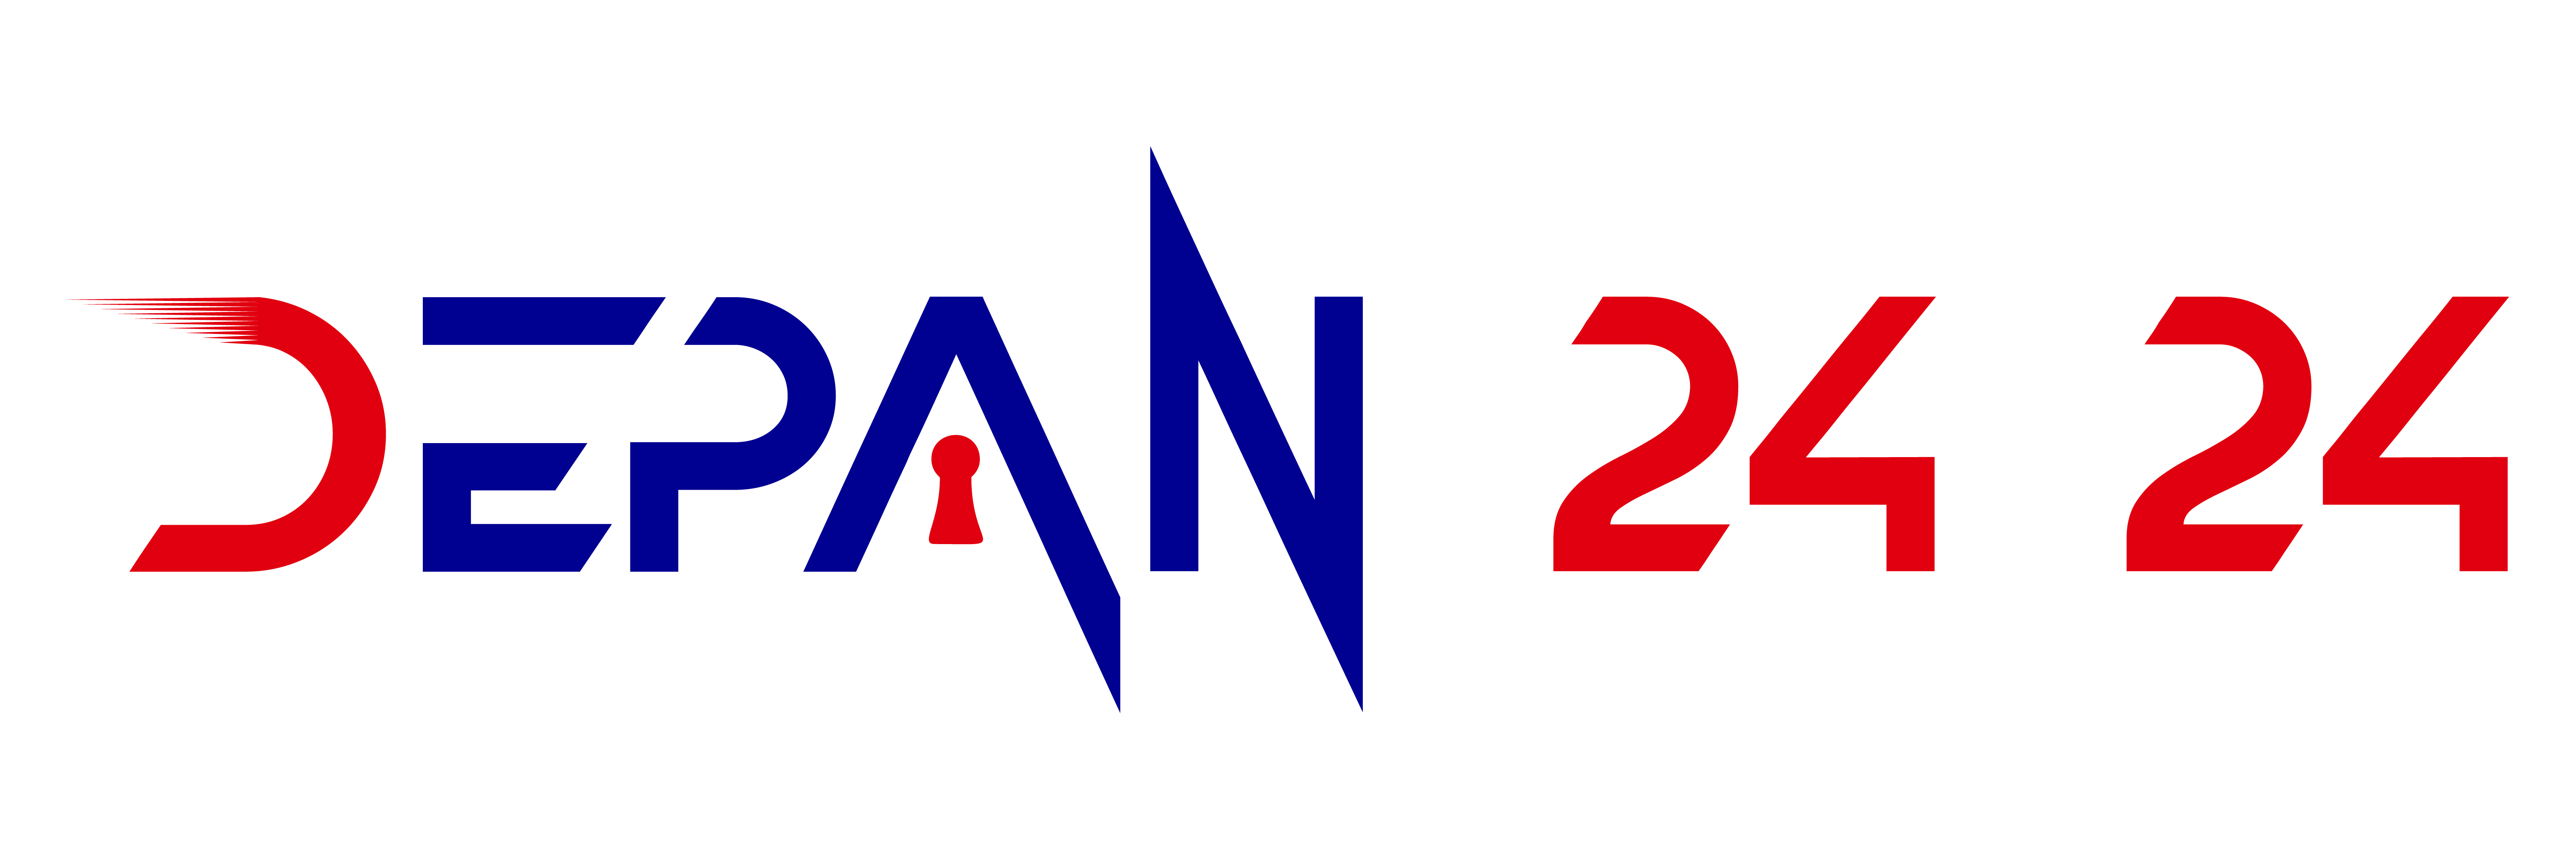 Depan2424 Logo